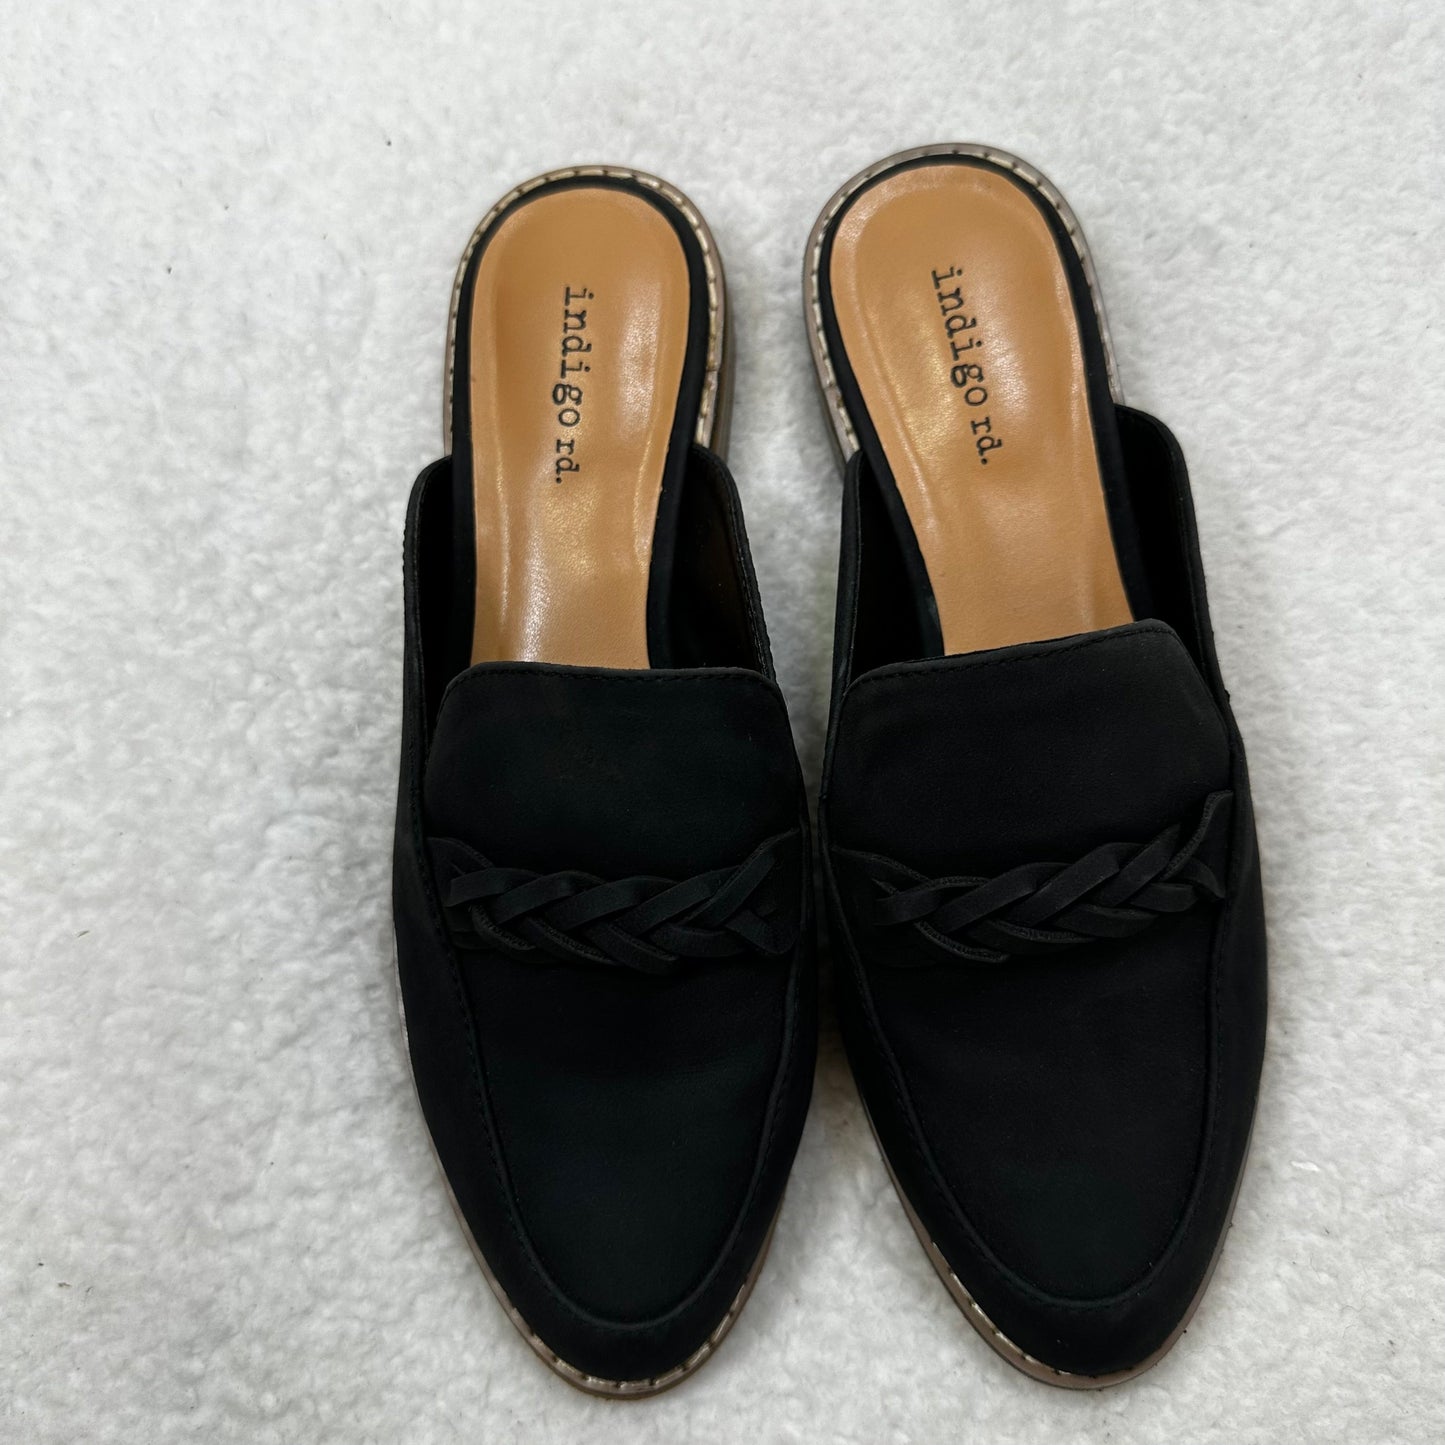 Black Shoes Flats Mule & Slide Clothes Mentor, Size 6.5